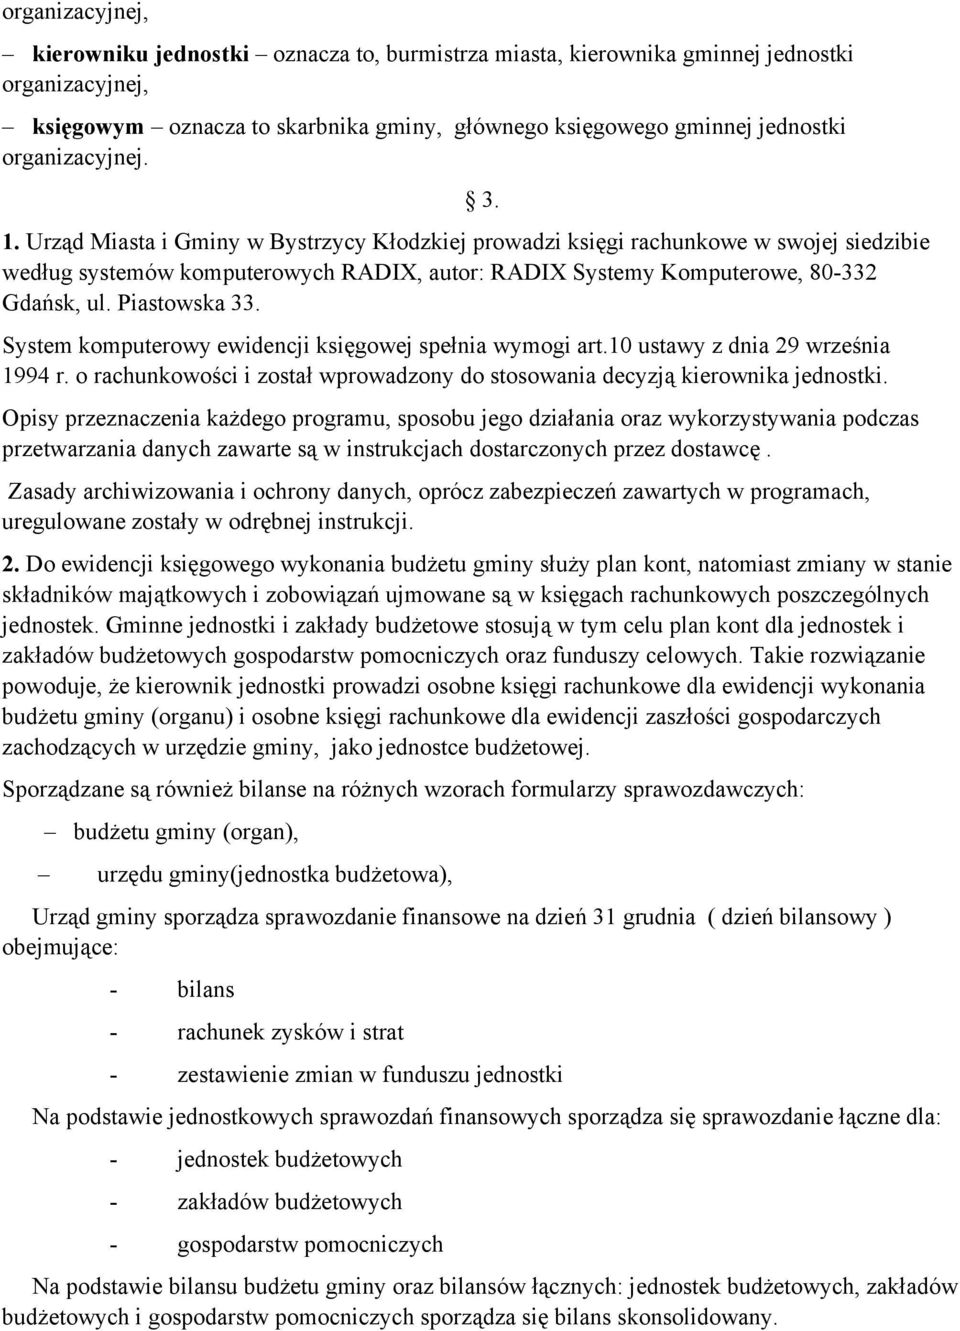 Piastowska 33. System komputerowy ewidencji księgowej spełnia wymogi art.10 ustawy z dnia 29 września 1994 r. o rachunkowości i został wprowadzony do stosowania decyzją kierownika jednostki.